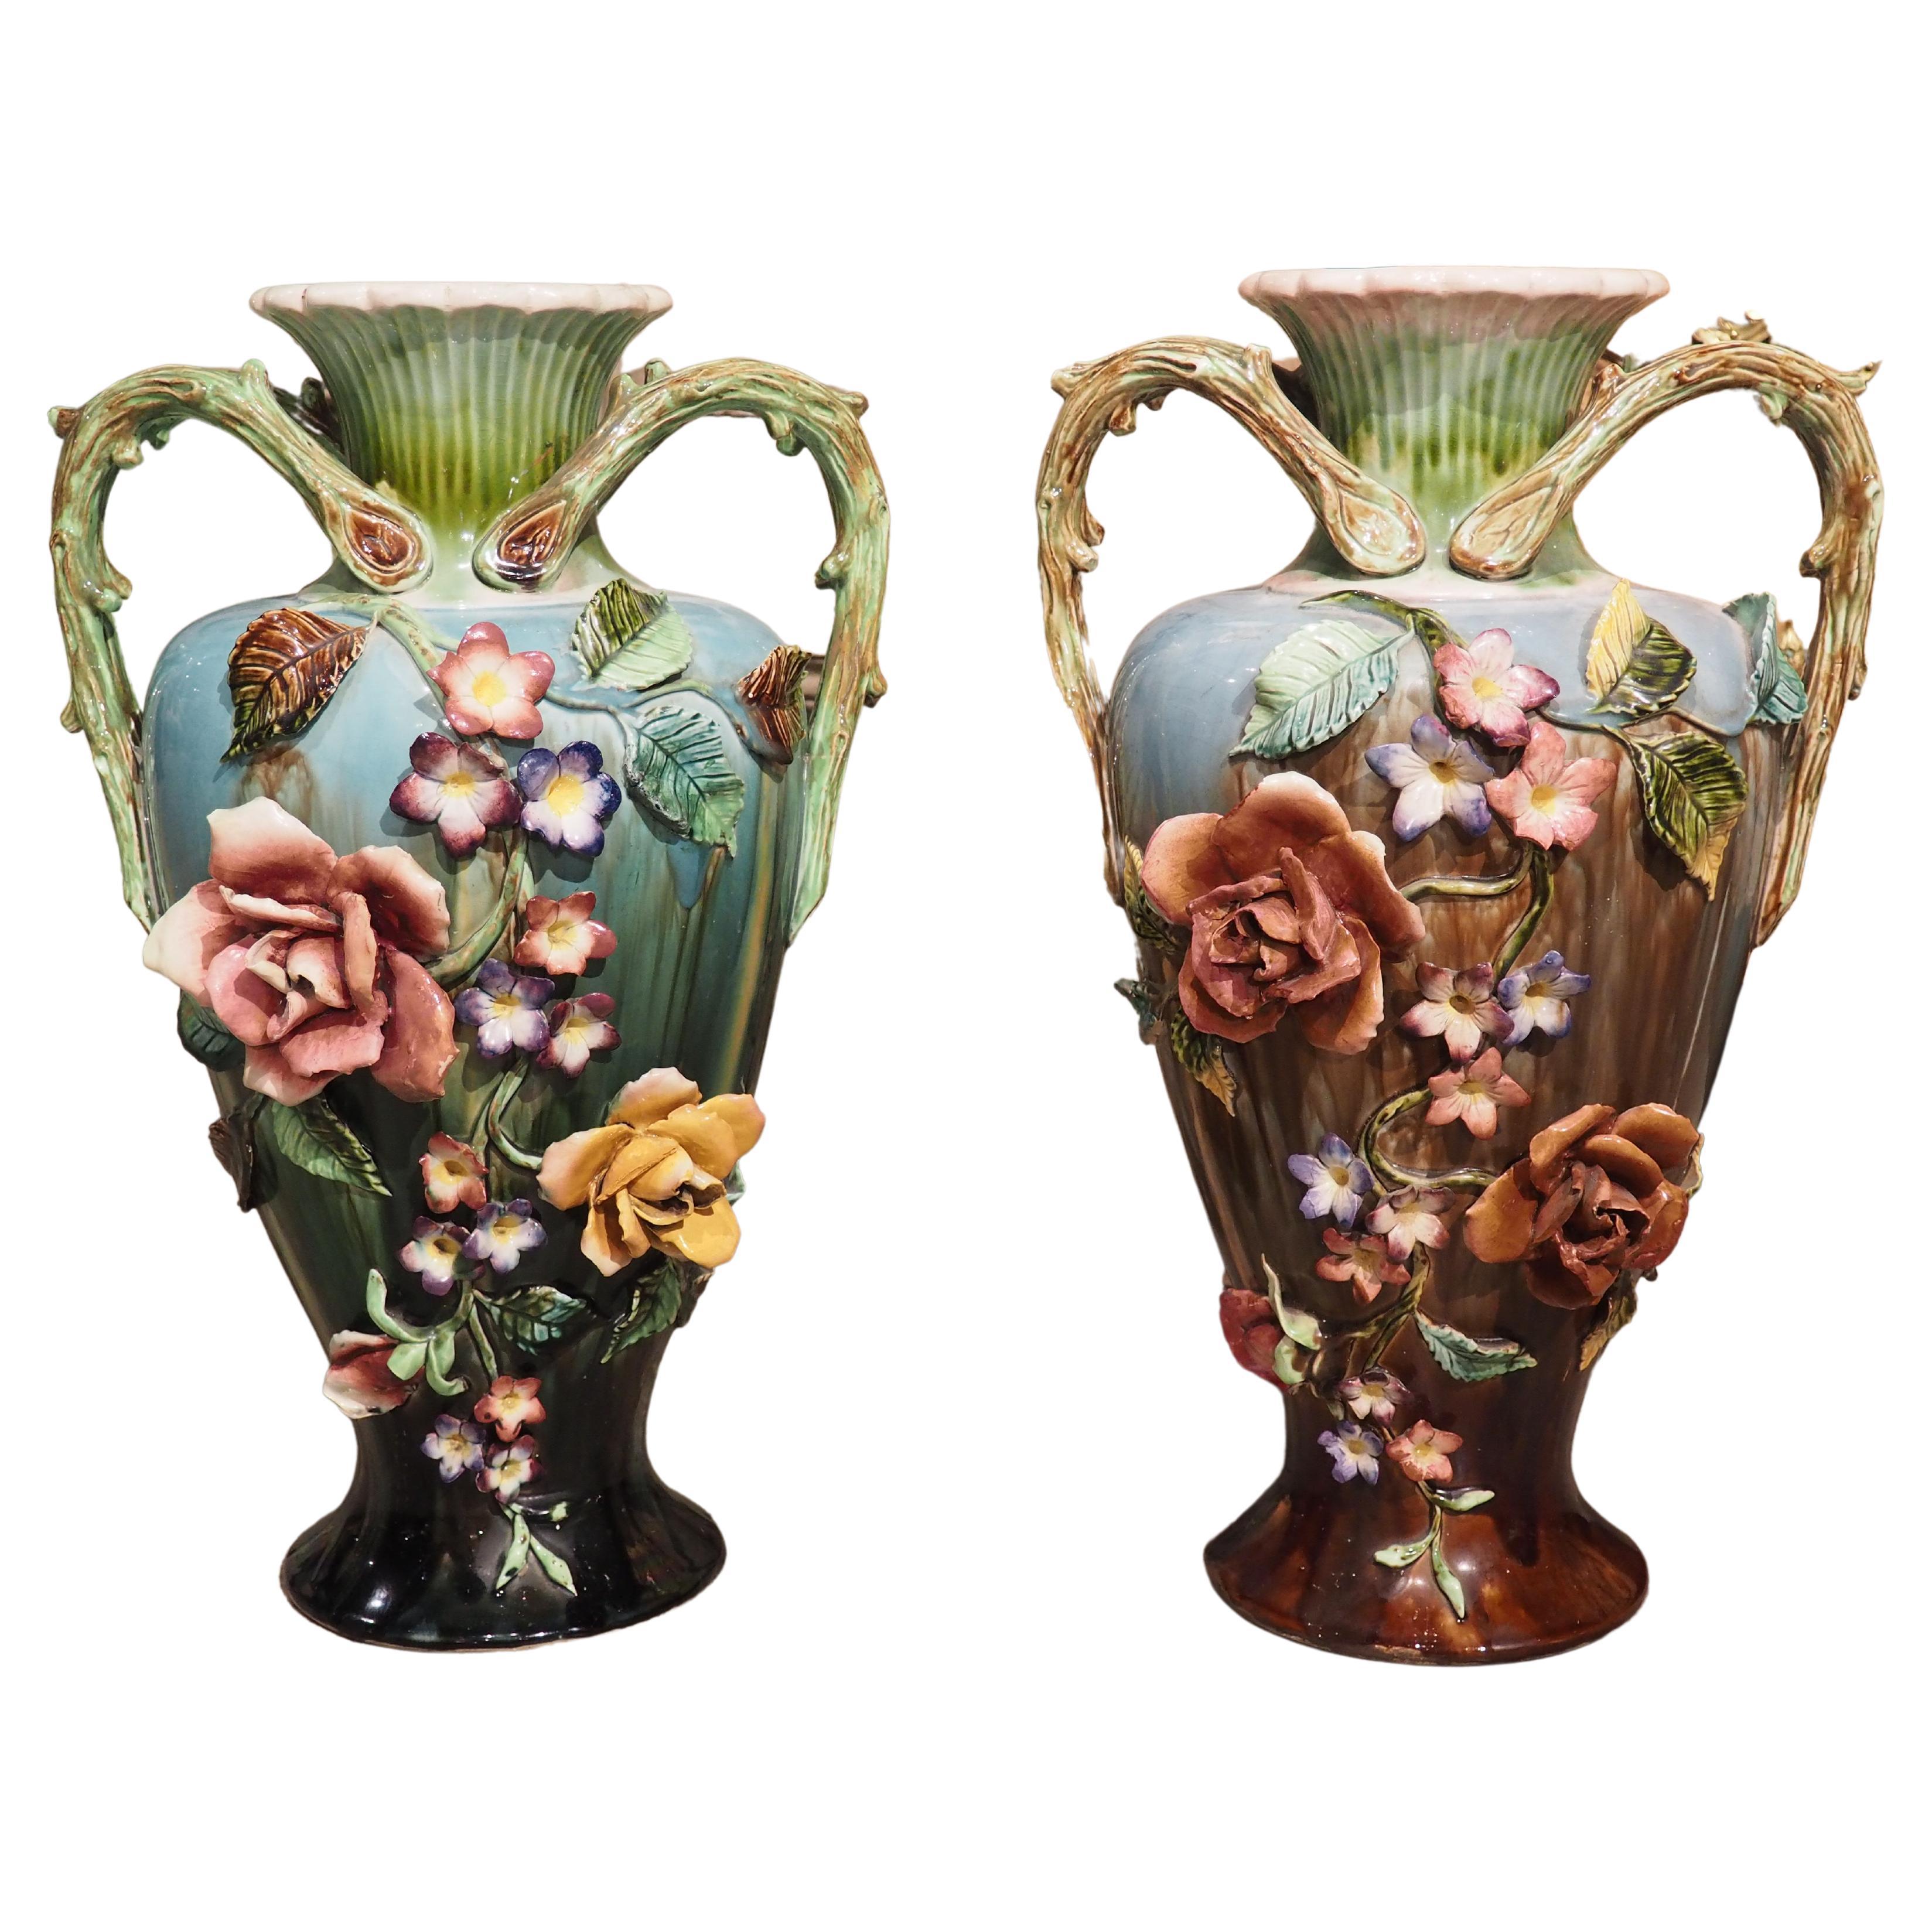 Paire de grands vases barbotines anciens en relief de la période Art nouveau français